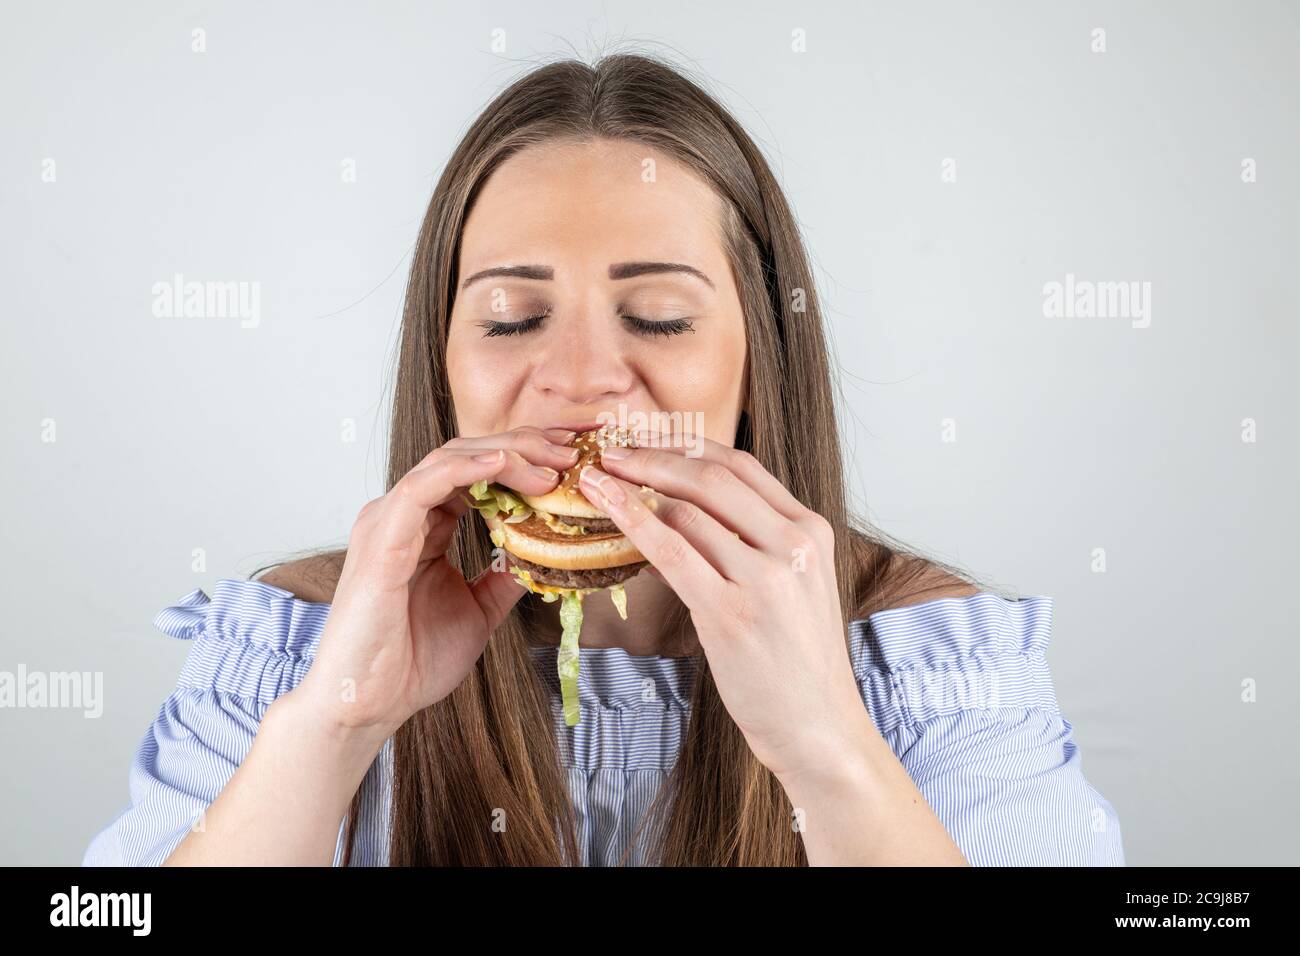 Porträt einer schönen jungen Frau essen einen Burger, isoliert auf weißem Hintergrund Stockfoto